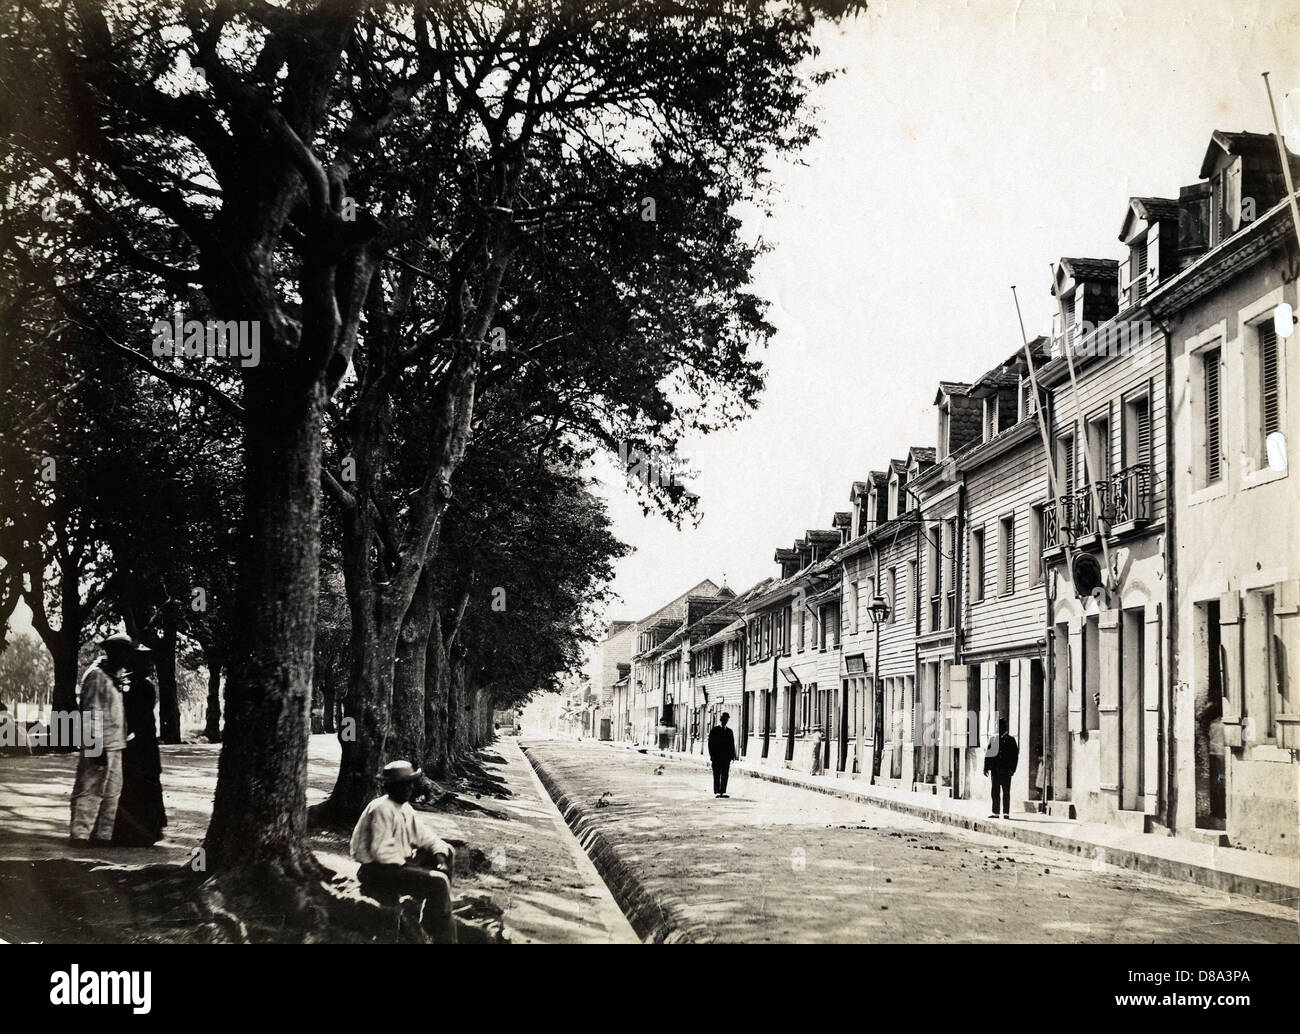 Rue du Gouvernement, Fort de France, Martinique, ca 1870, by Gaston Fabre Stock Photo